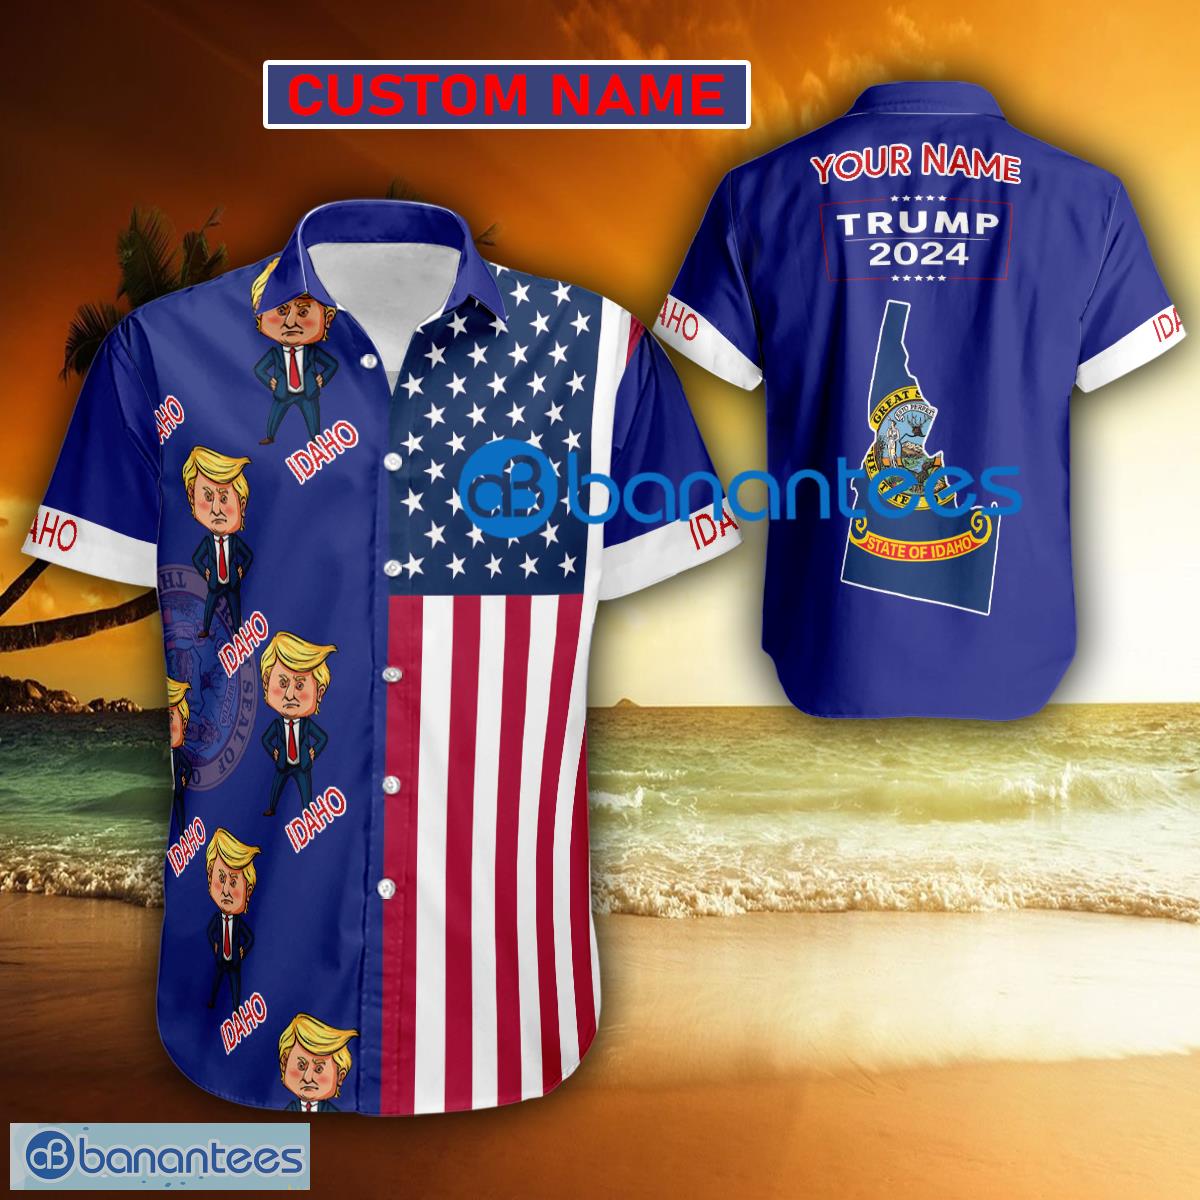 Trump 2024 Weary IDAHO USA Flag Funny Hawaiian Shirt Gift Fans Custom Name - Trump 2024 Weary IDAHO USA Flag Funny Hawaiian Shirt Gift Fans Custom Name